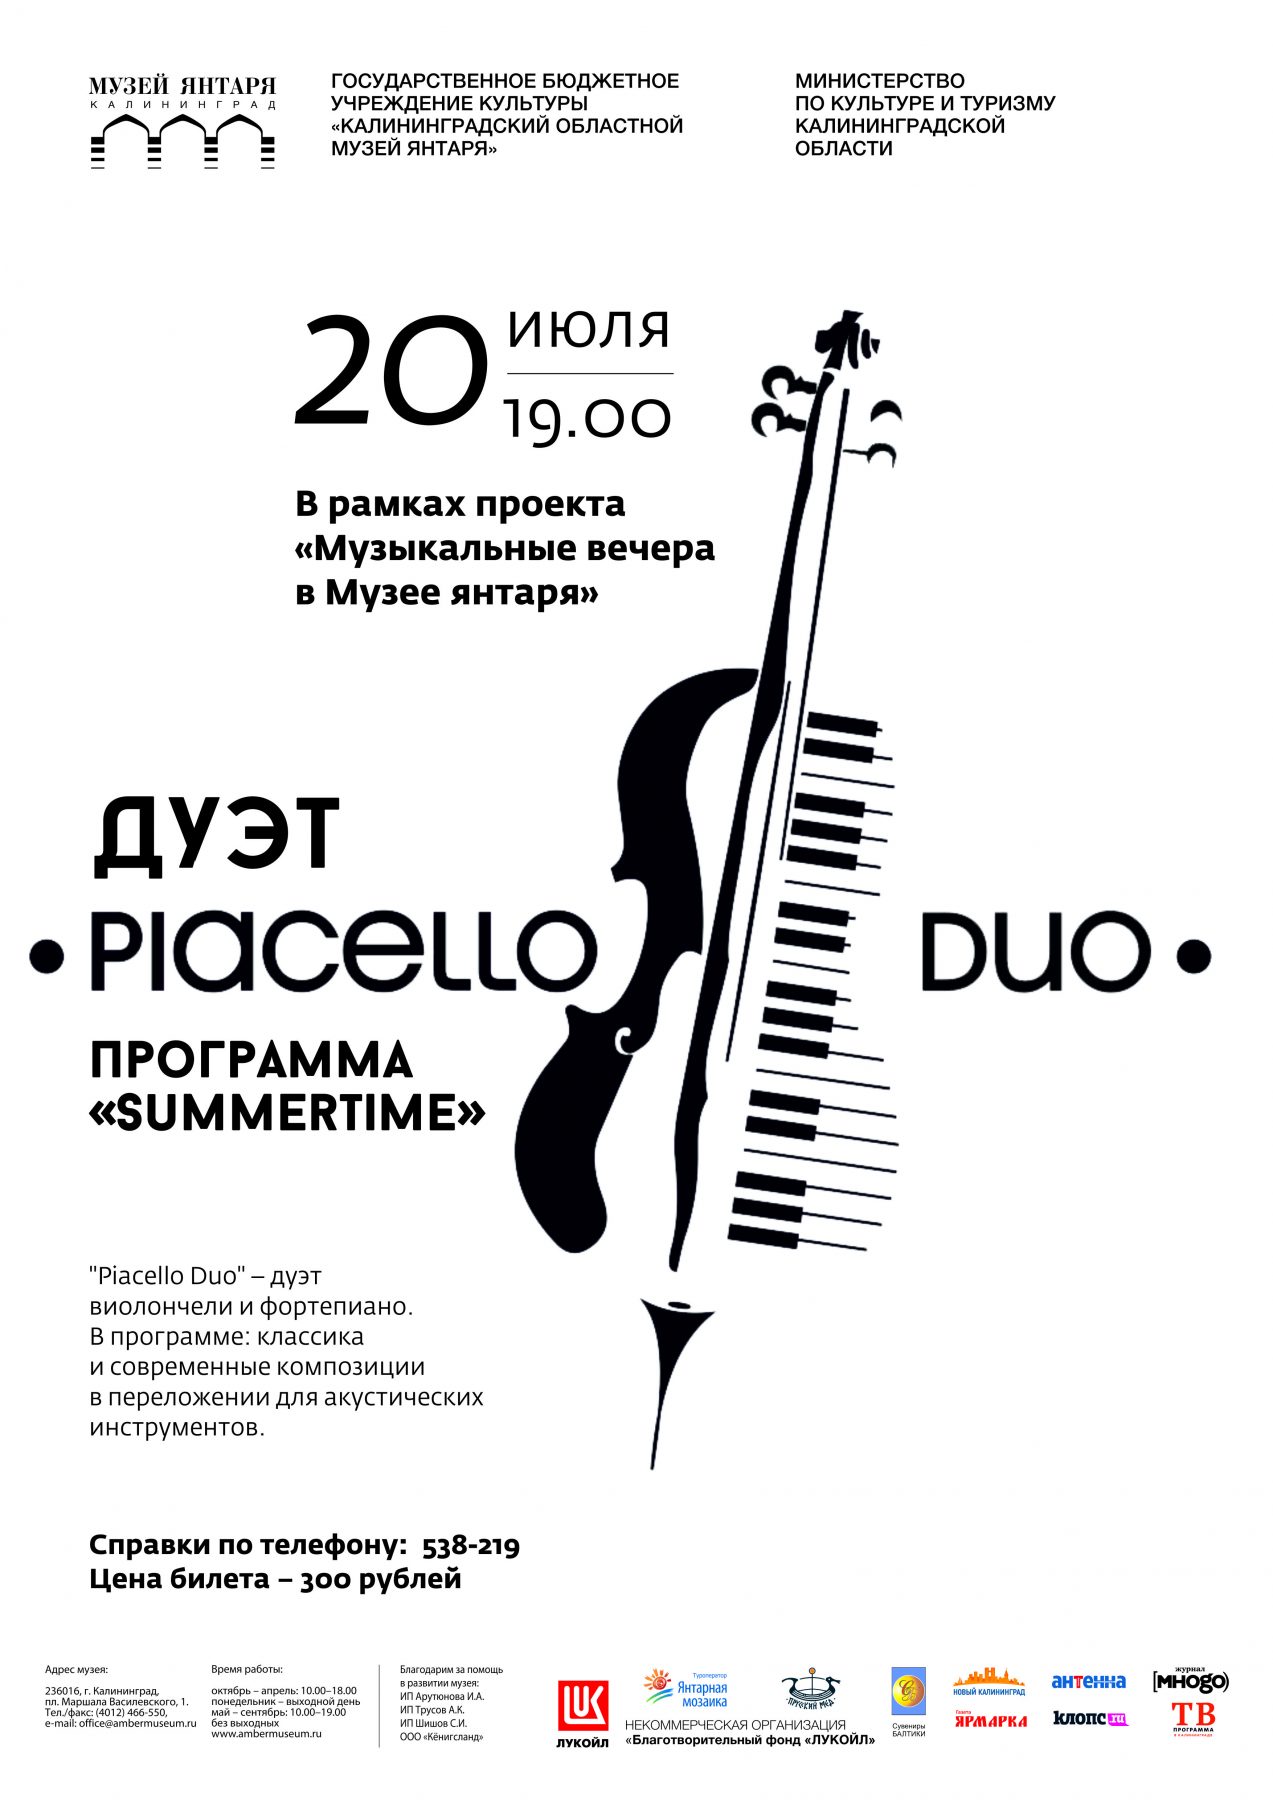 20 июля: Дуэт «Piacello Duo»